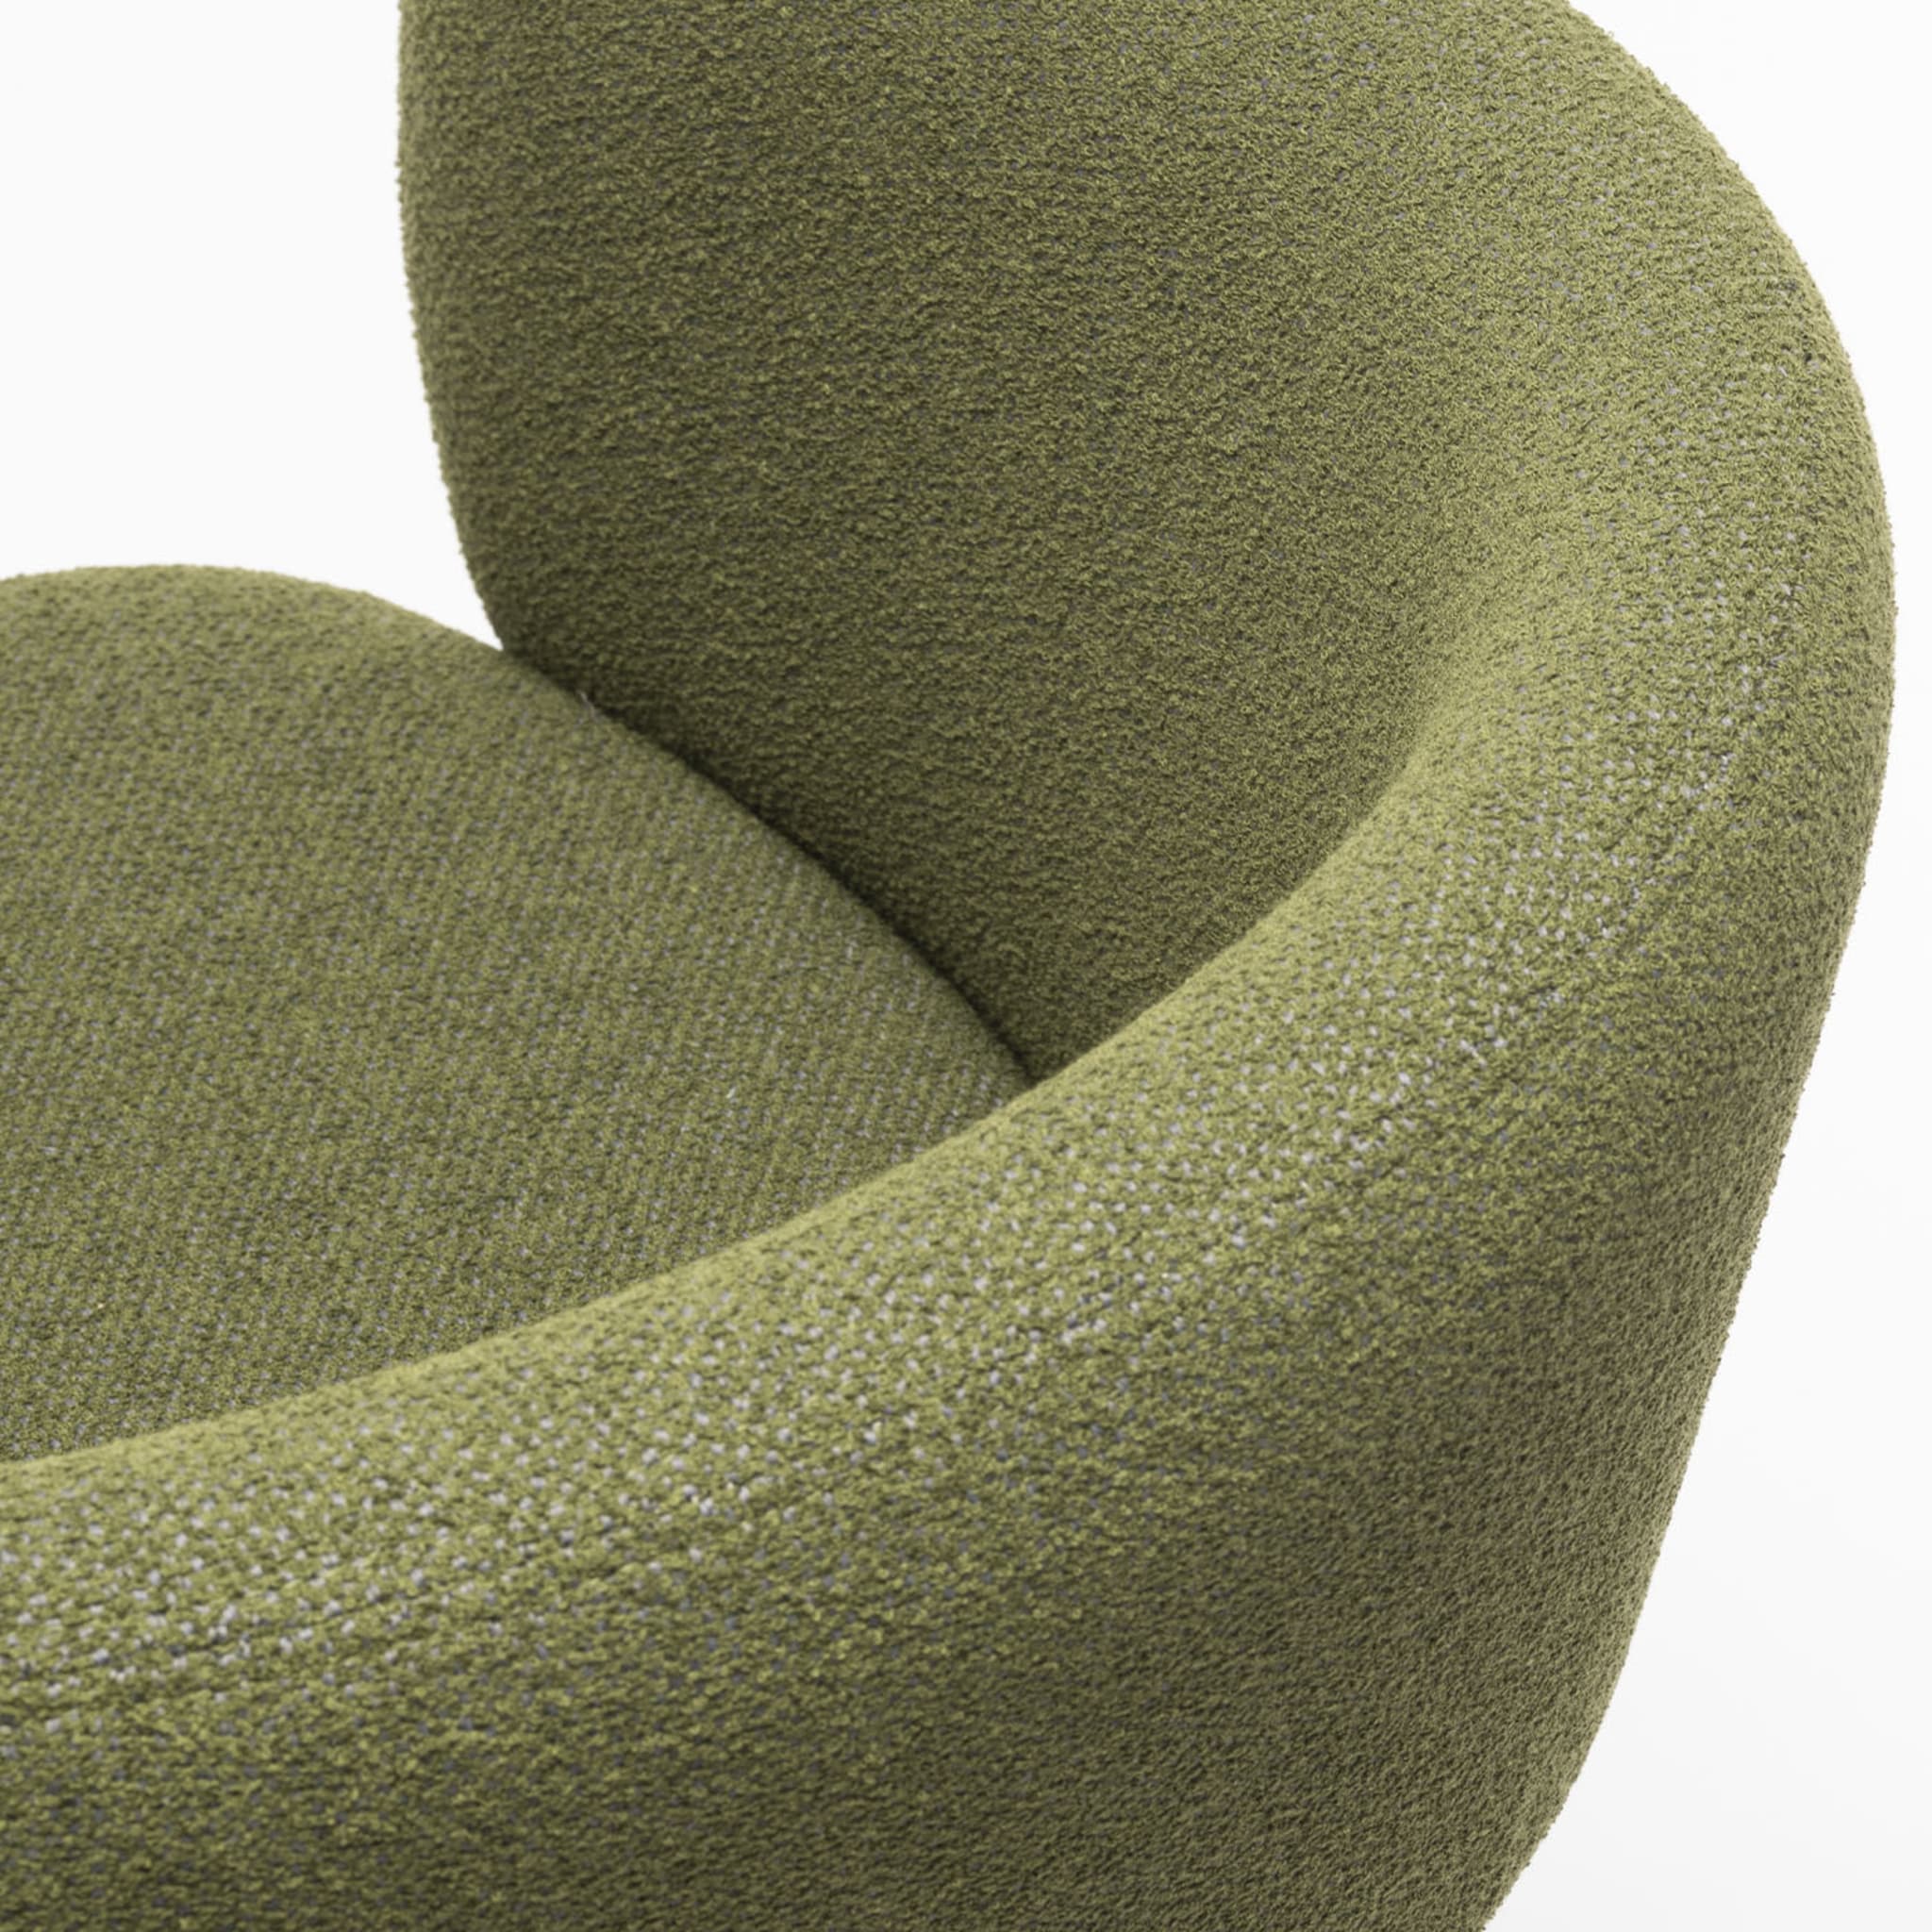 Bel S Grüner Stuhl von Pablo Regano - Alternative Ansicht 1